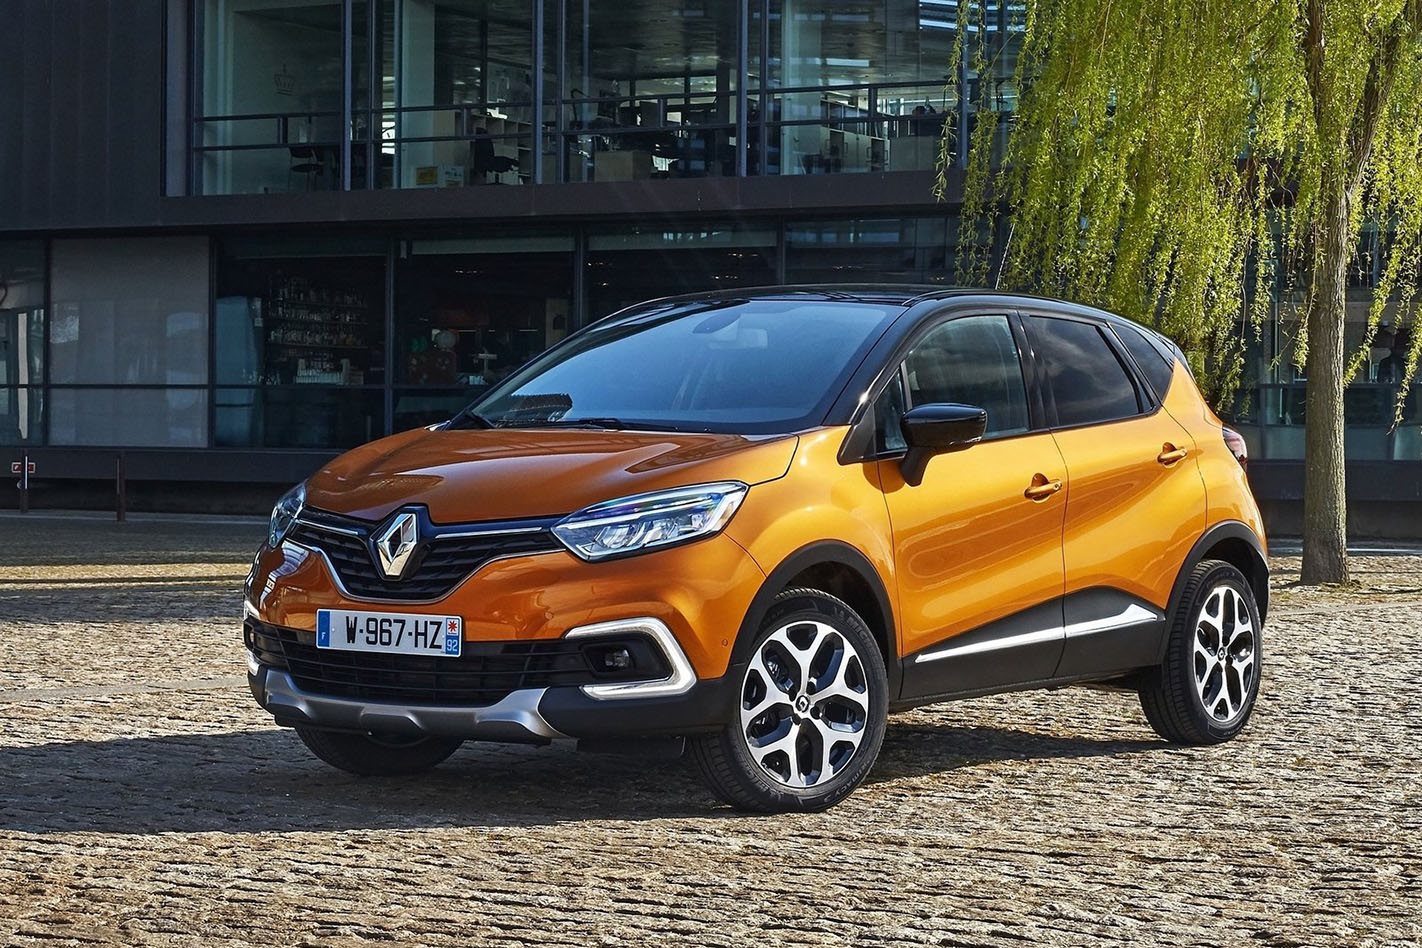 Renault Captur 2018 Price in Pakistan Specs Features Top Speed Reviews Pictures